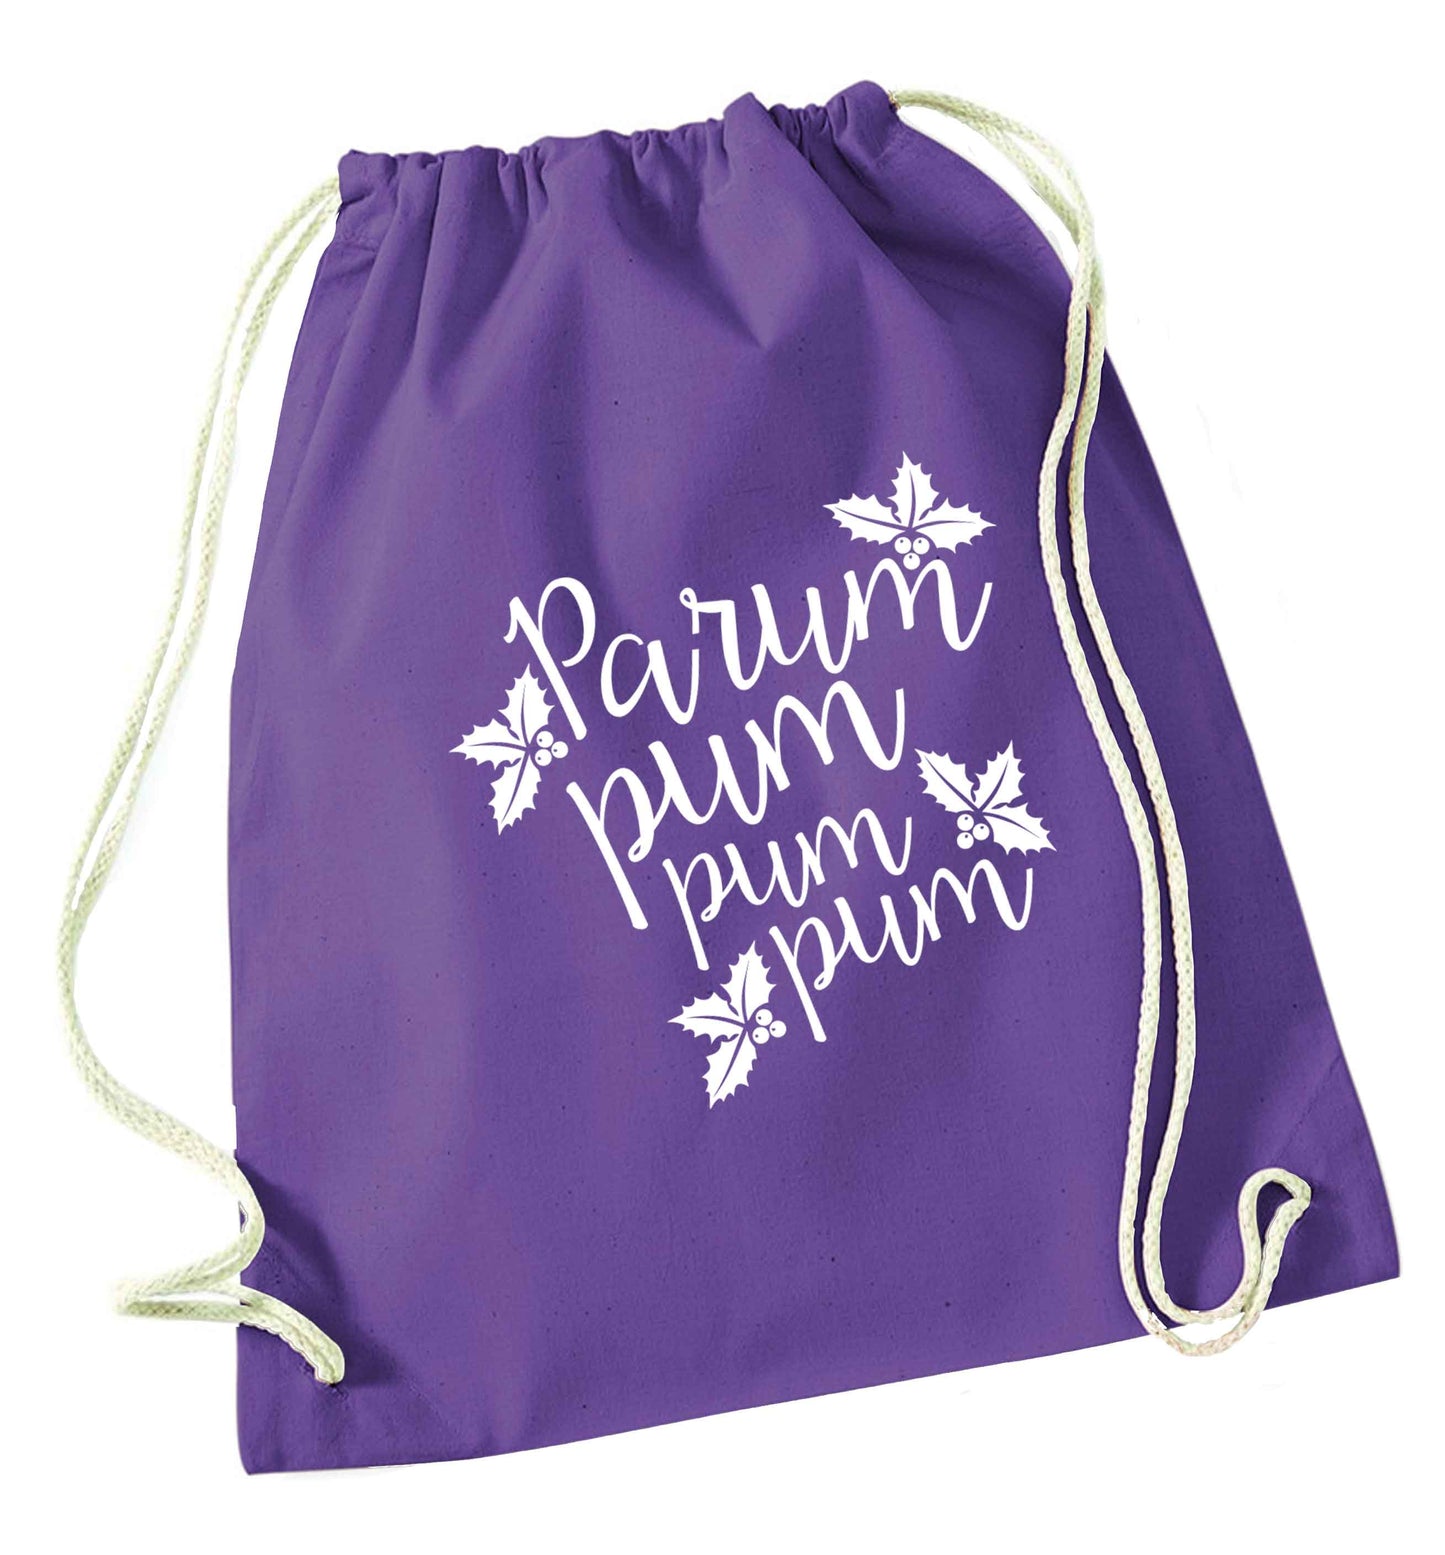 Pa rum pum pum pum purple drawstring bag